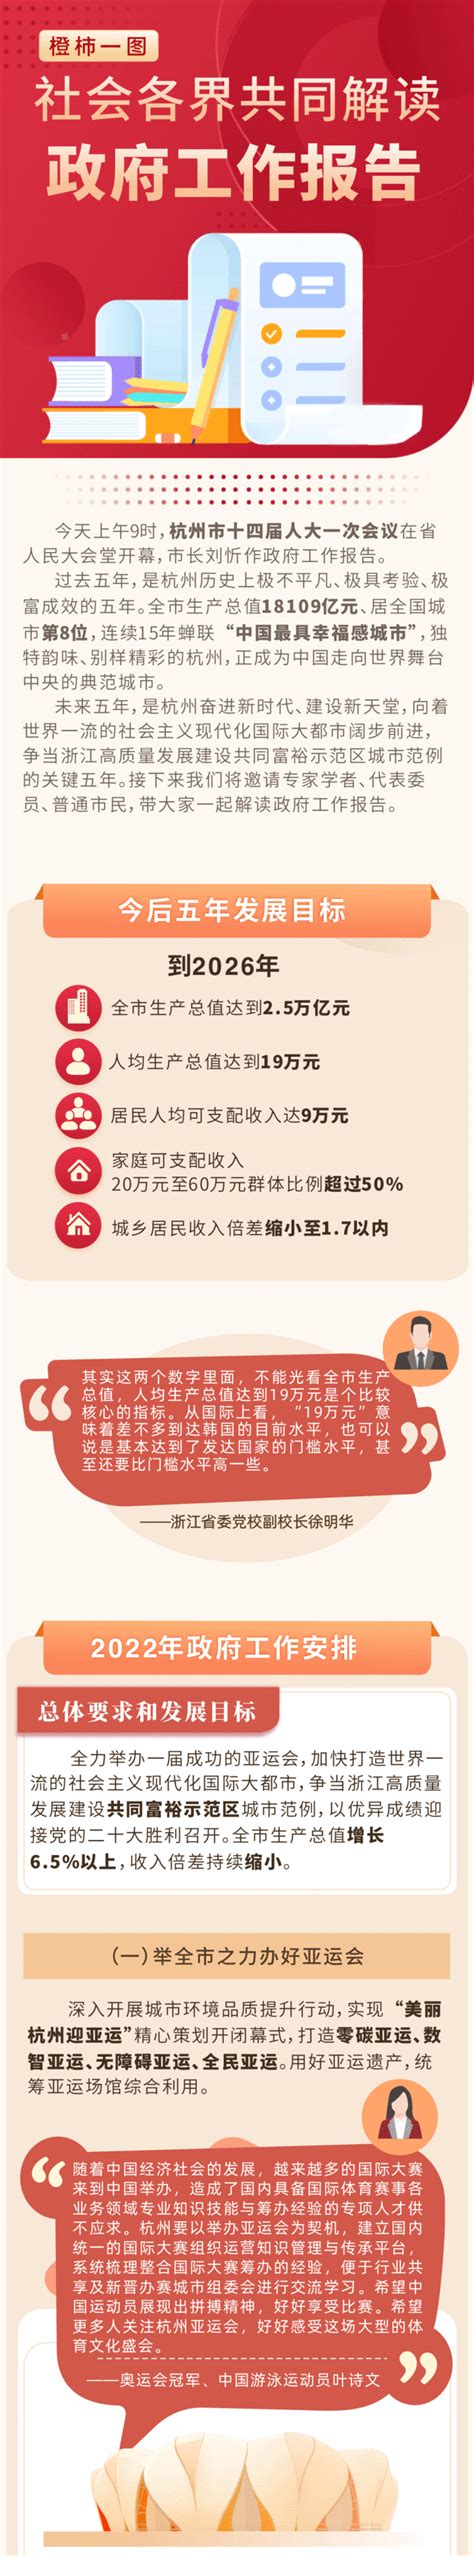 一图读懂丨名人明星、专家市民 共同解读杭州政府工作报告-杭州新闻中心-杭州网